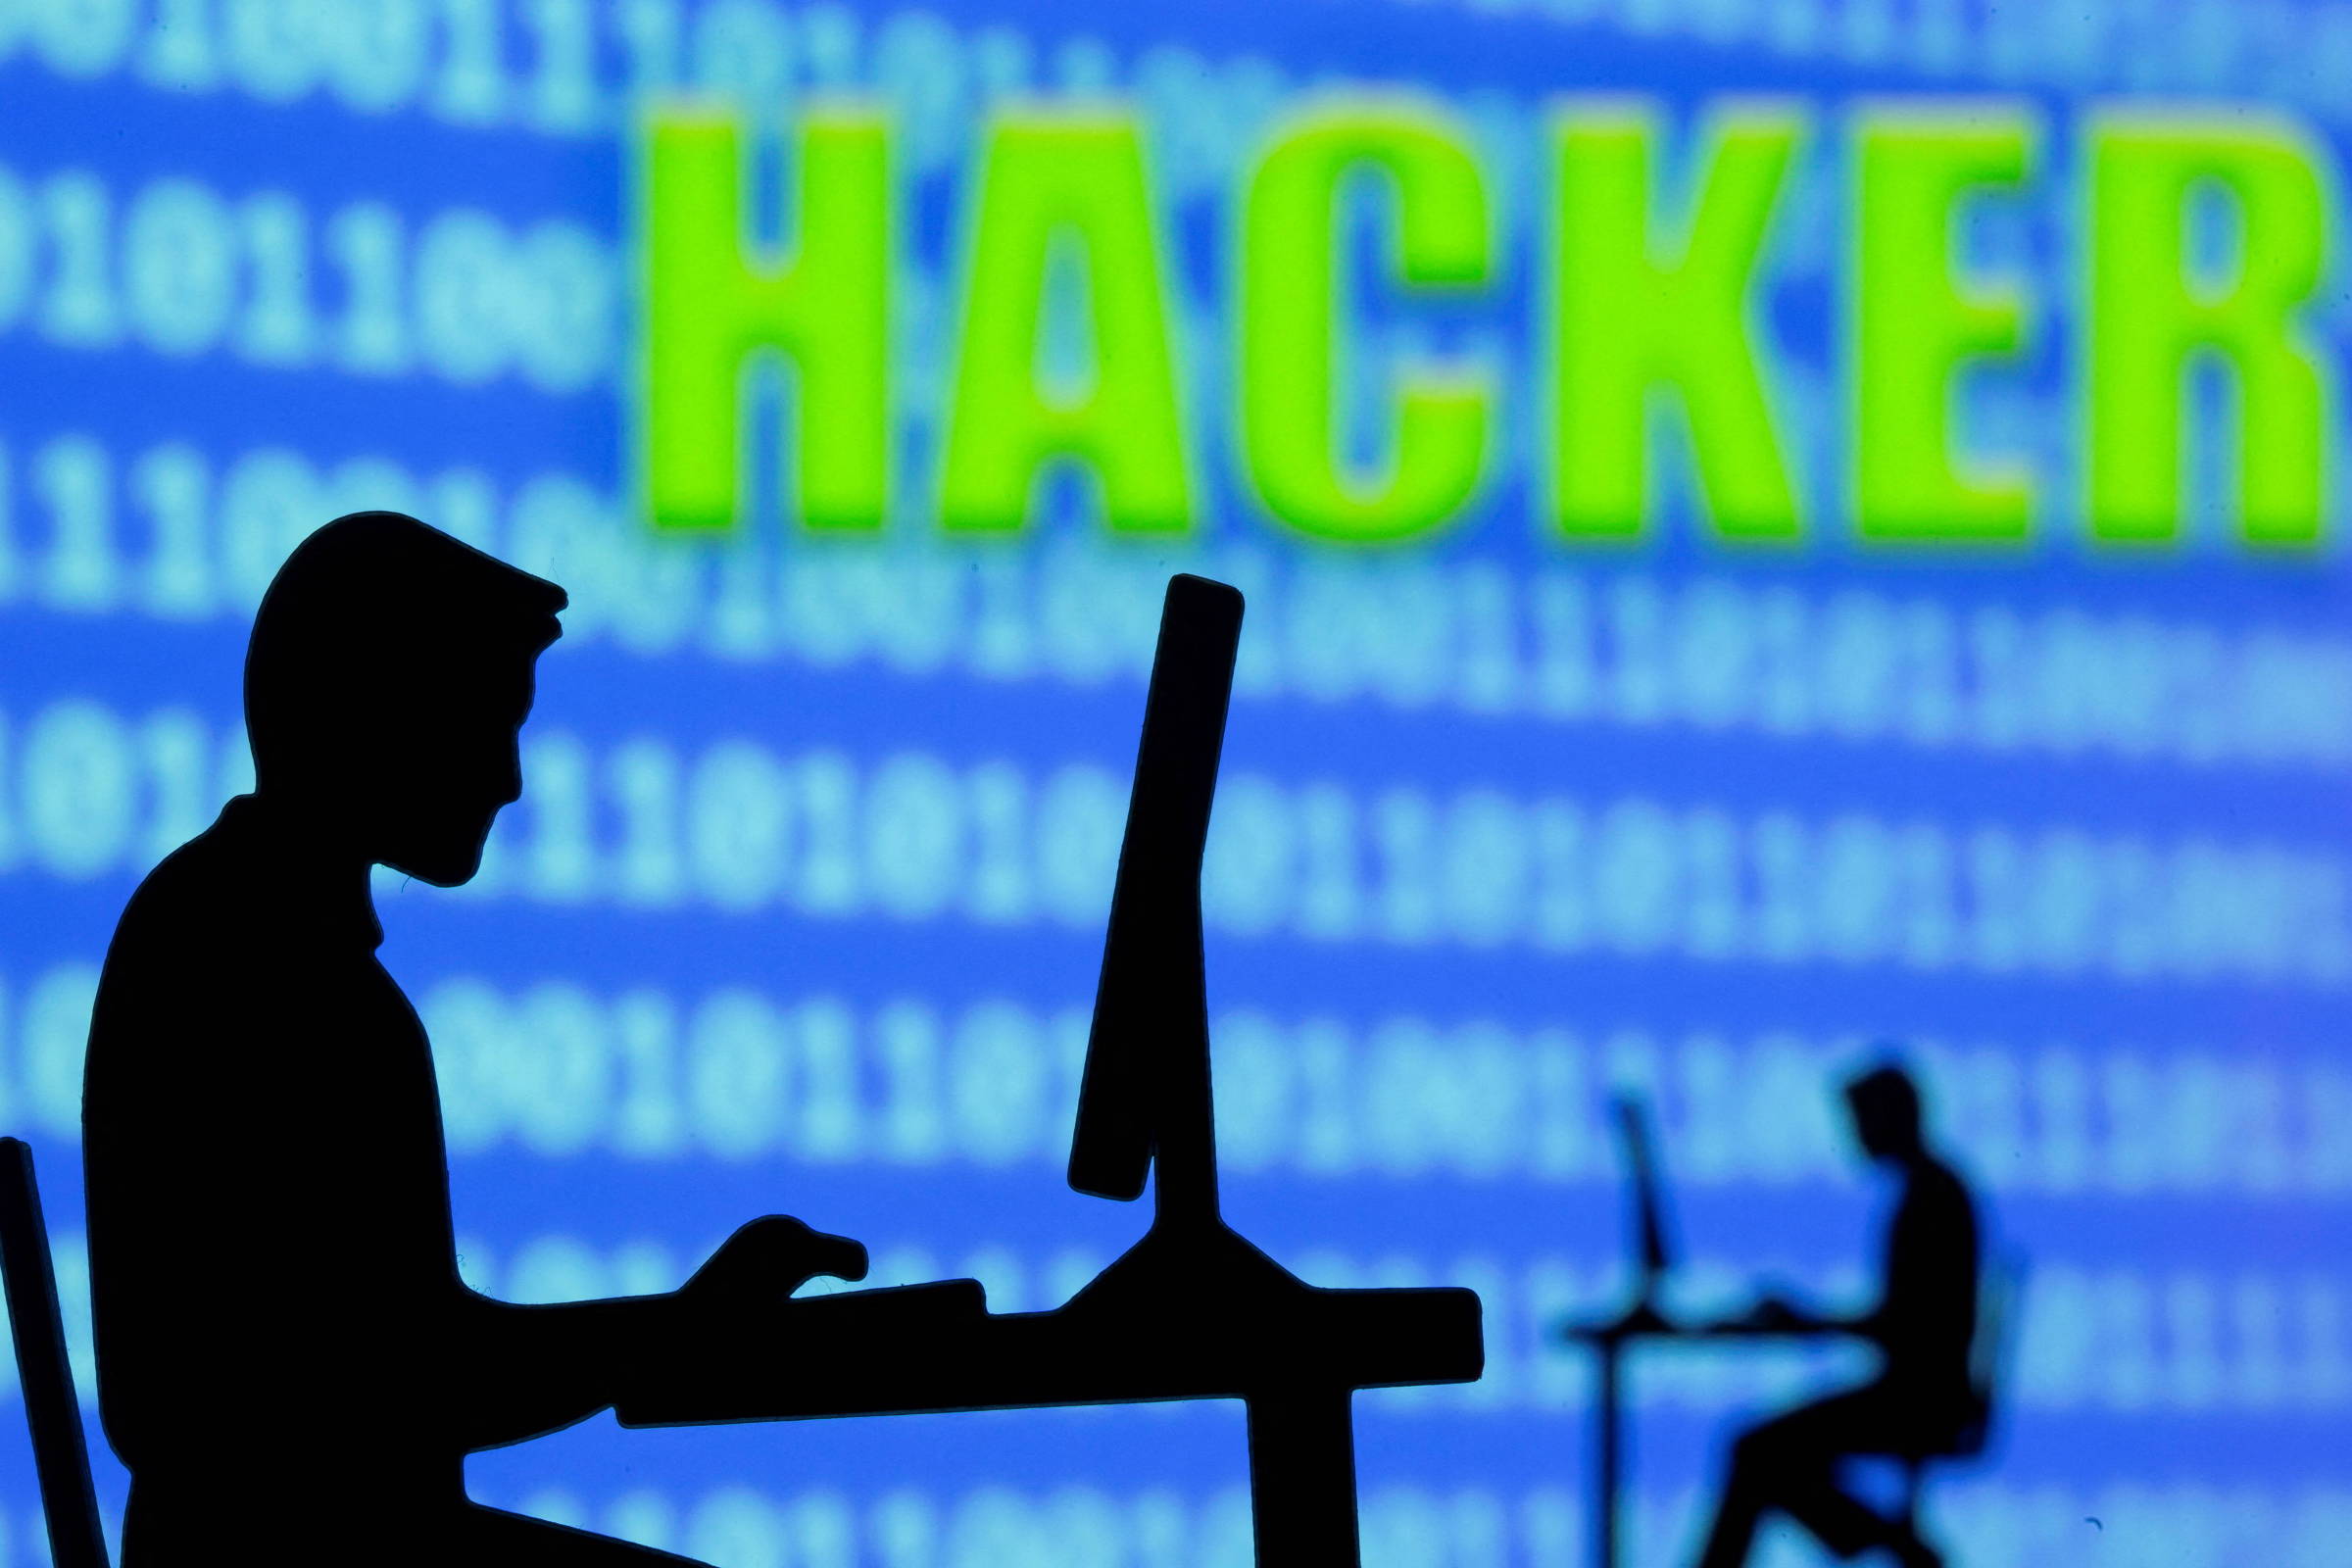 Os hackers que ganham milhões (legalmente) - BBC News Brasil